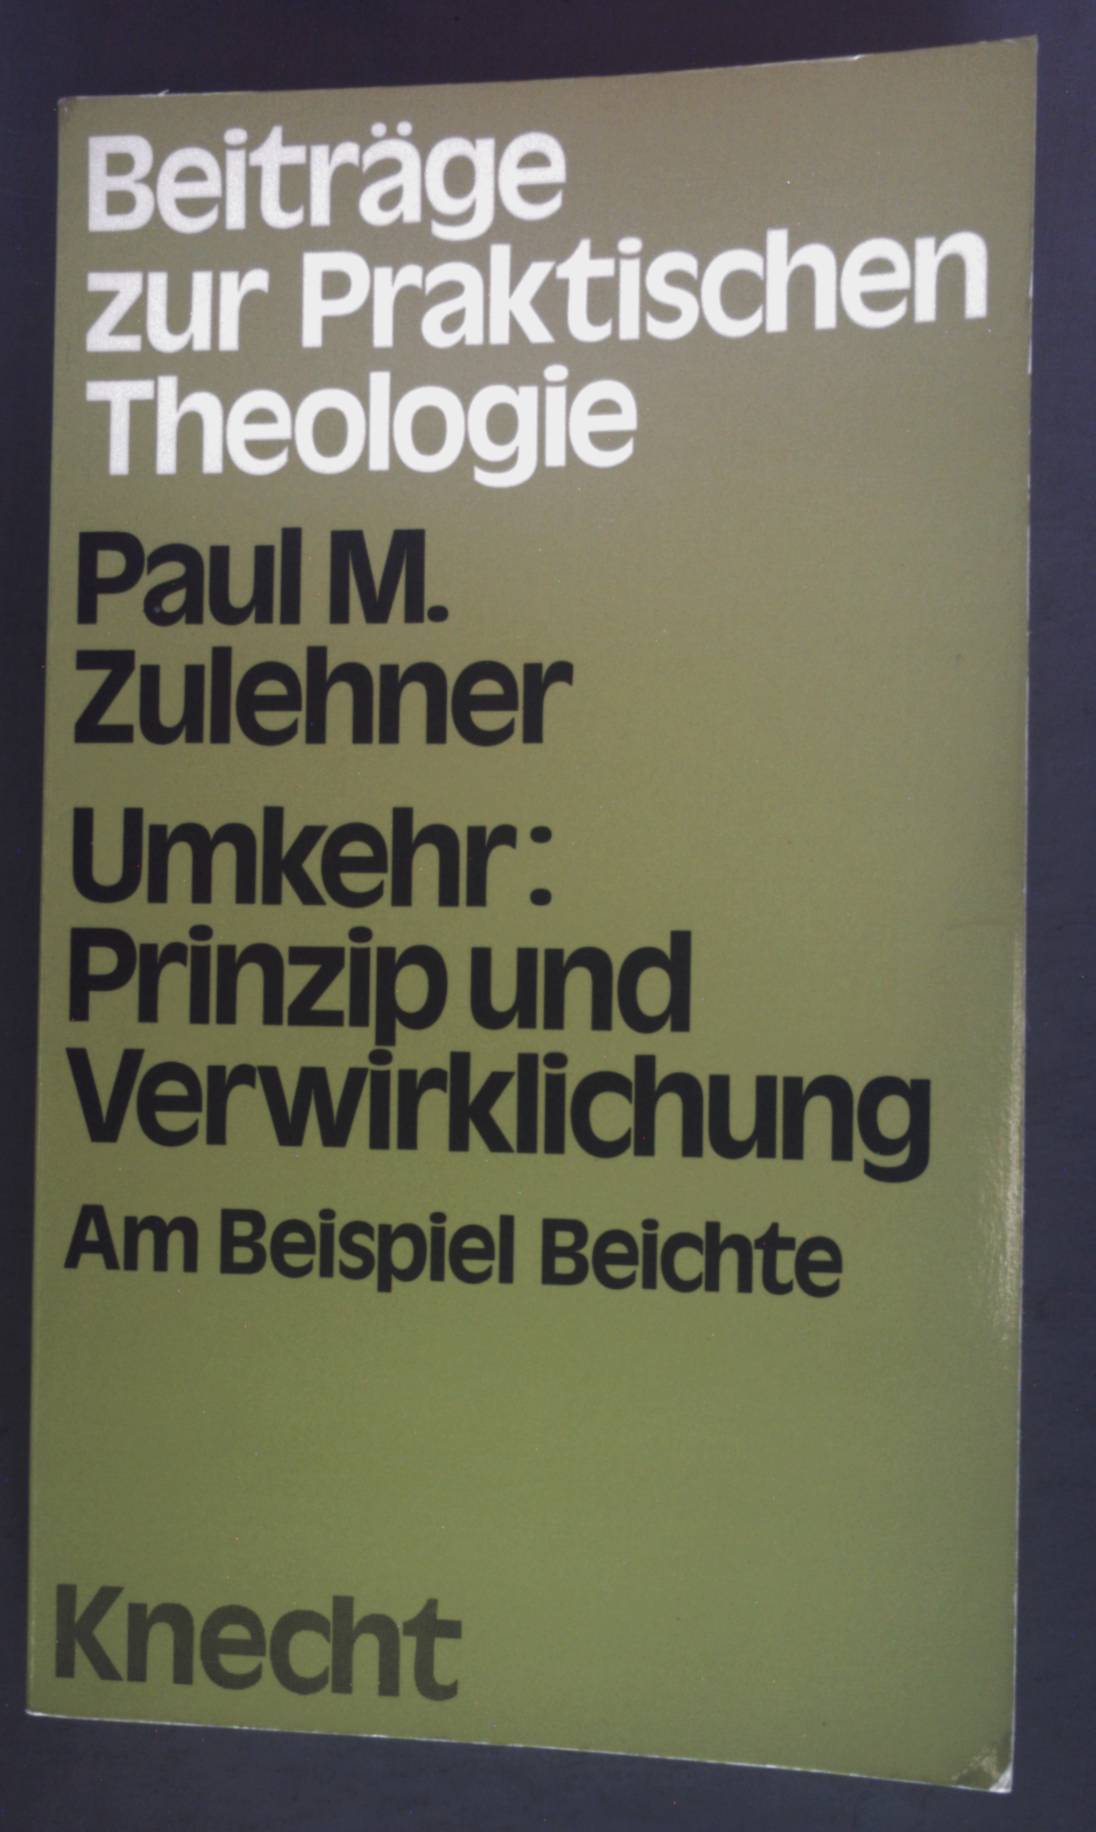 Umkehr, Prinzip und Verwirklichung am Beispiel Beichte. Beiträge zur praktischen Theologie: Erwachsenenbildung - Zulehner, Paul M.